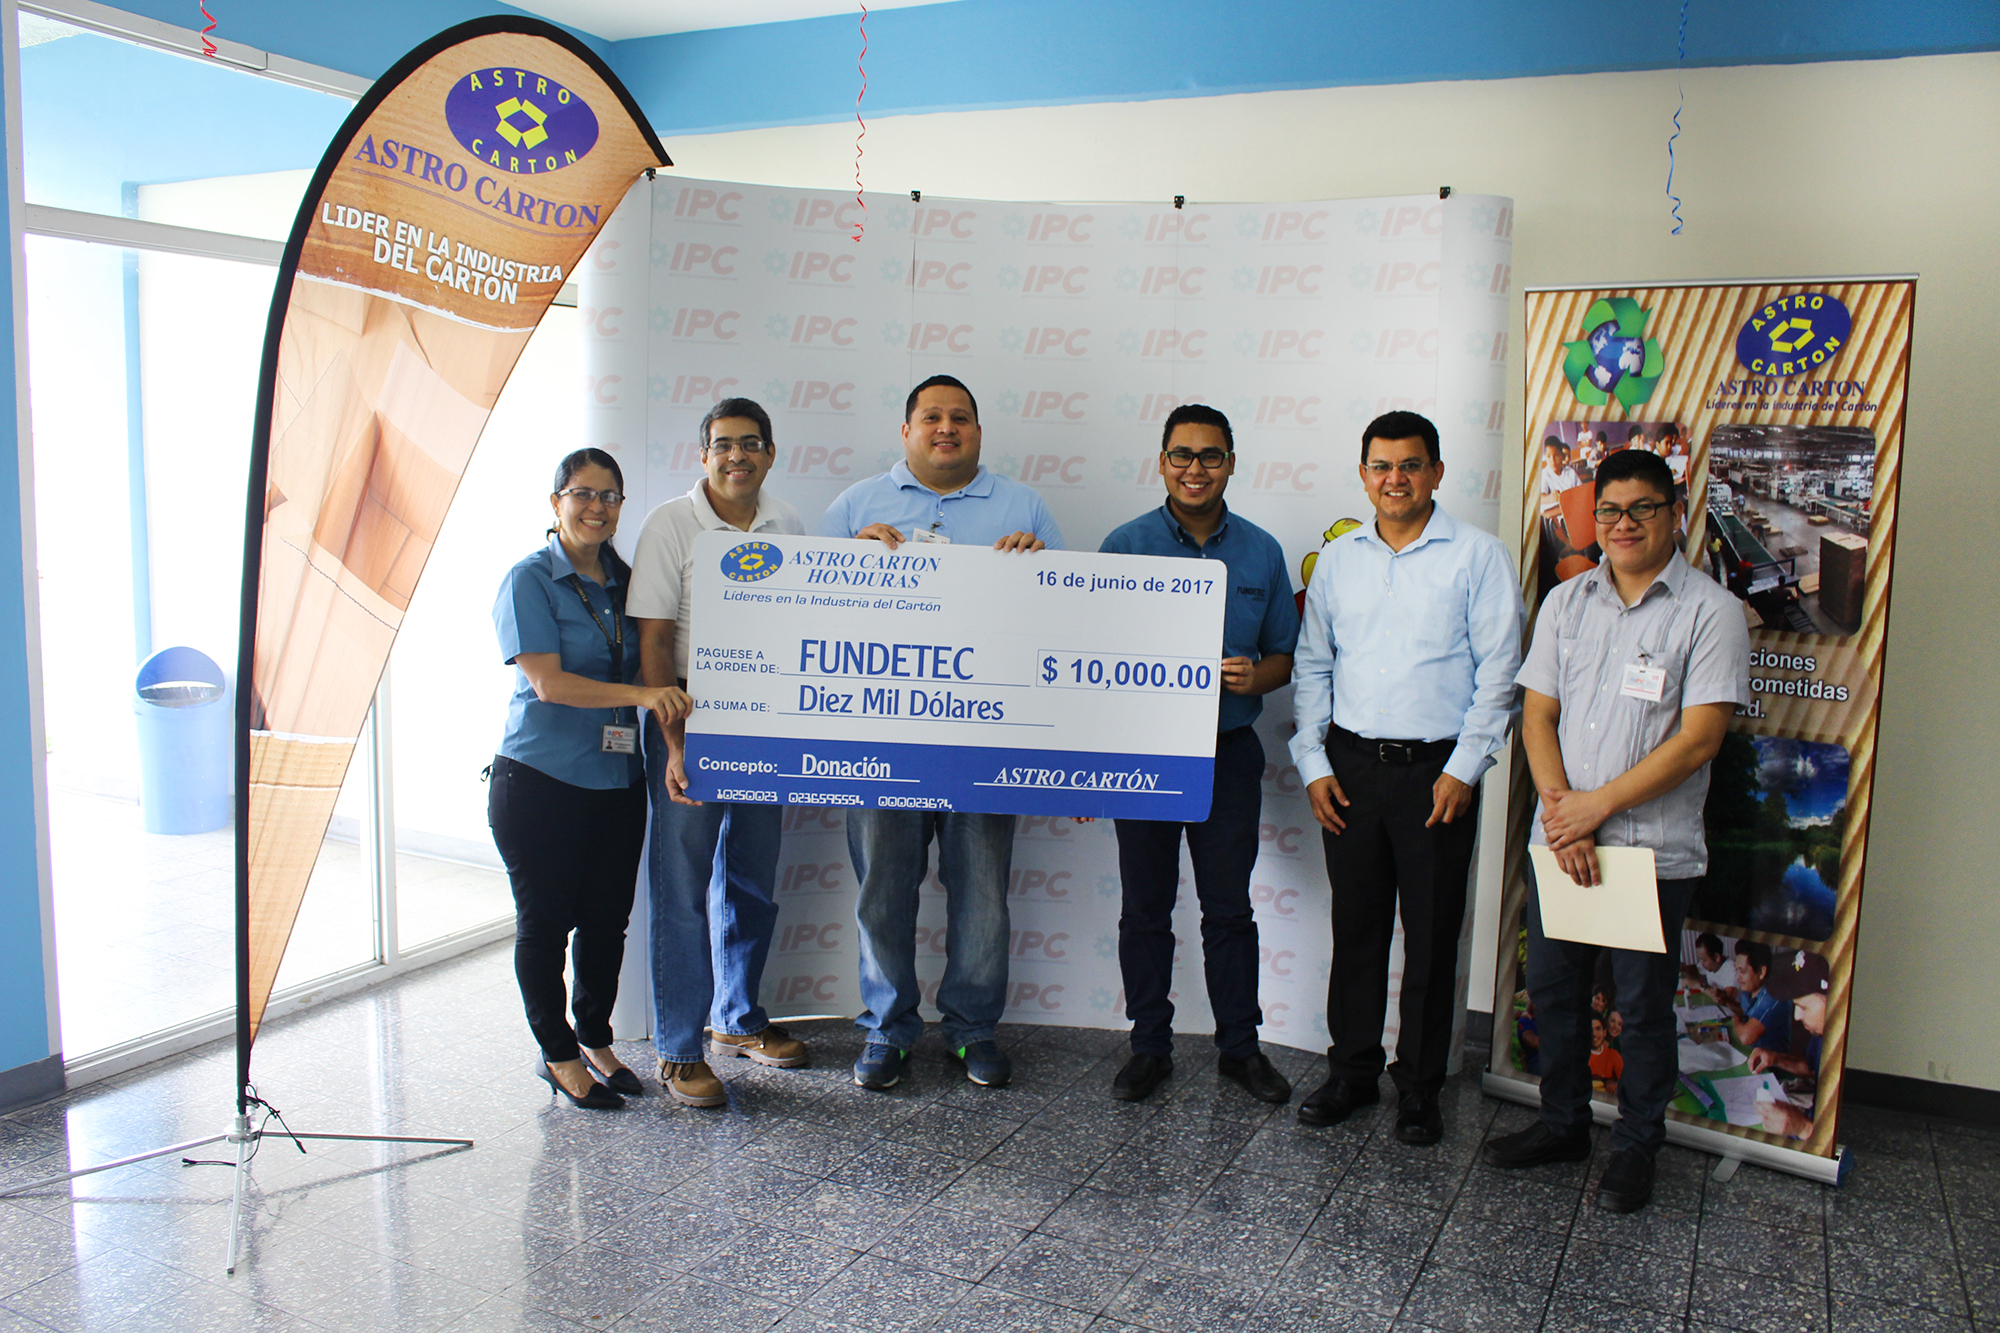 Astro Cartón Honduras firma convenio de cooperación económica para apoyar programas de formación técnica con Fundetec-IPC